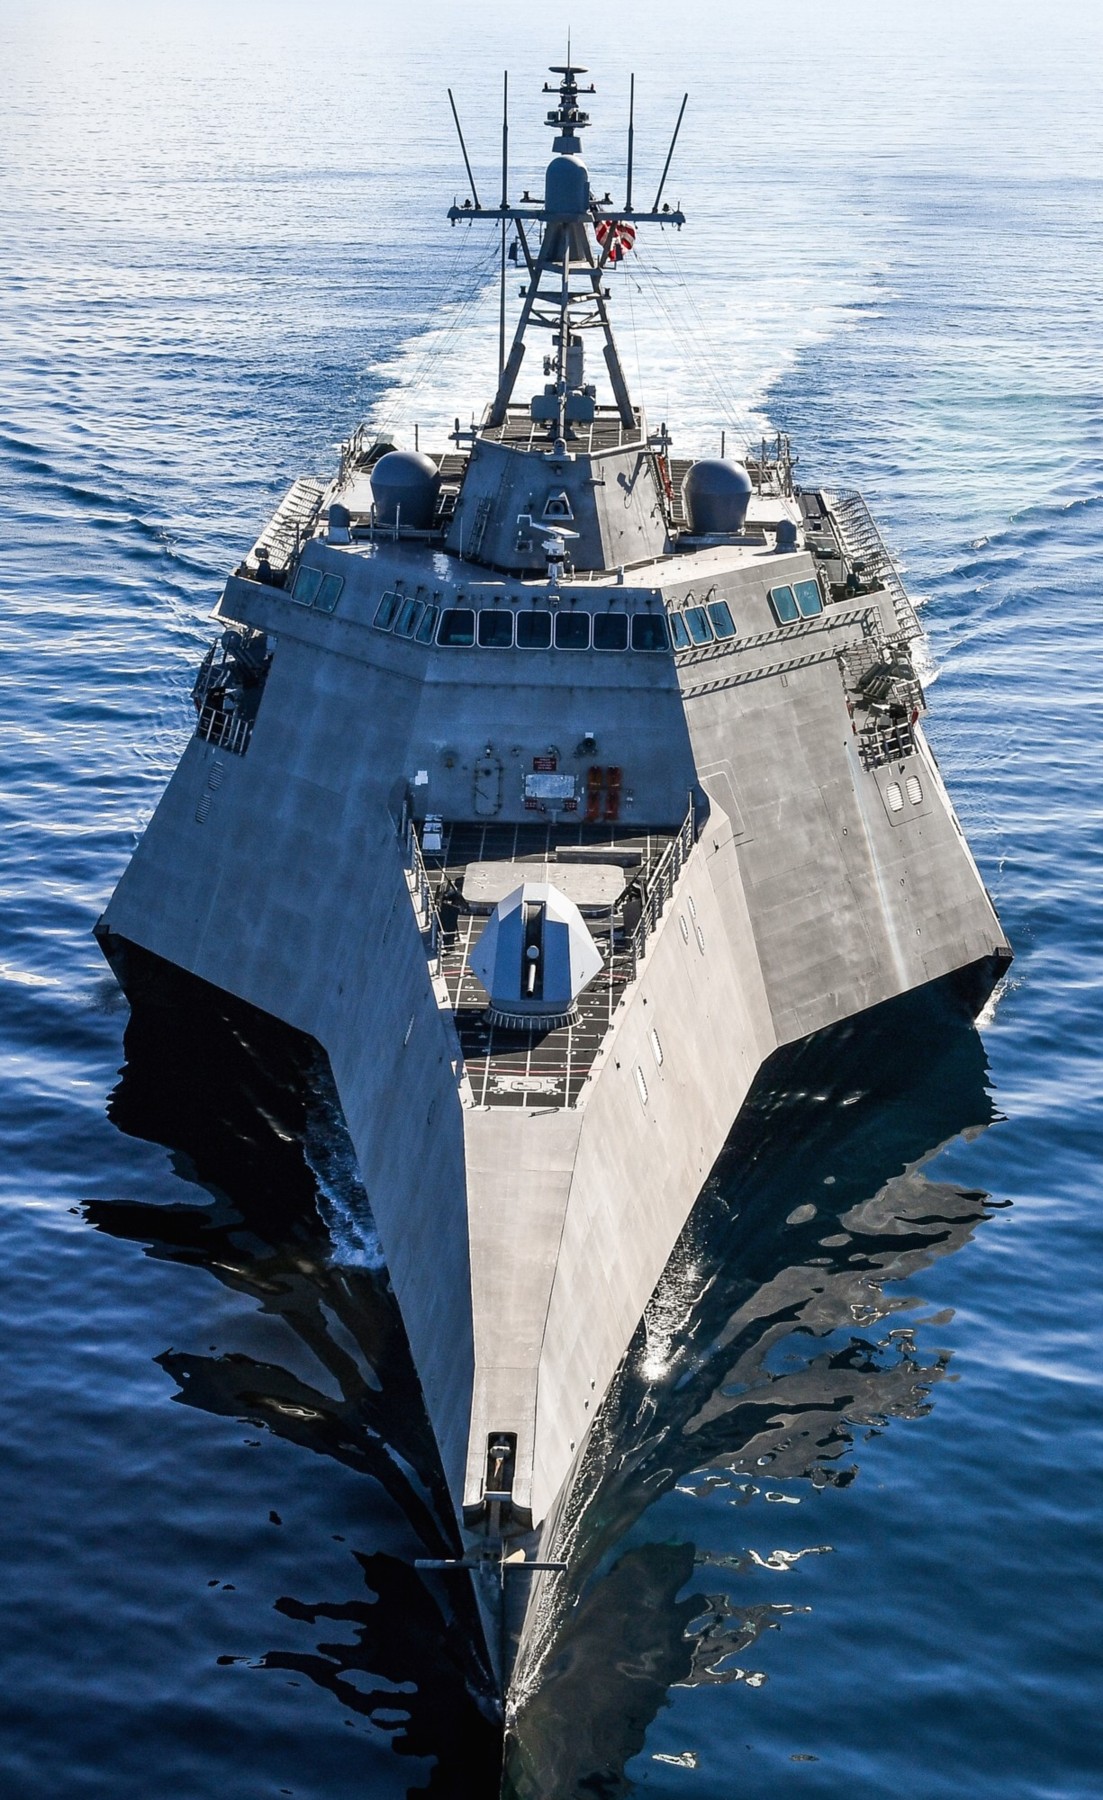 lcs-16 uss tulsa littoral combat ship independence class us navy 20